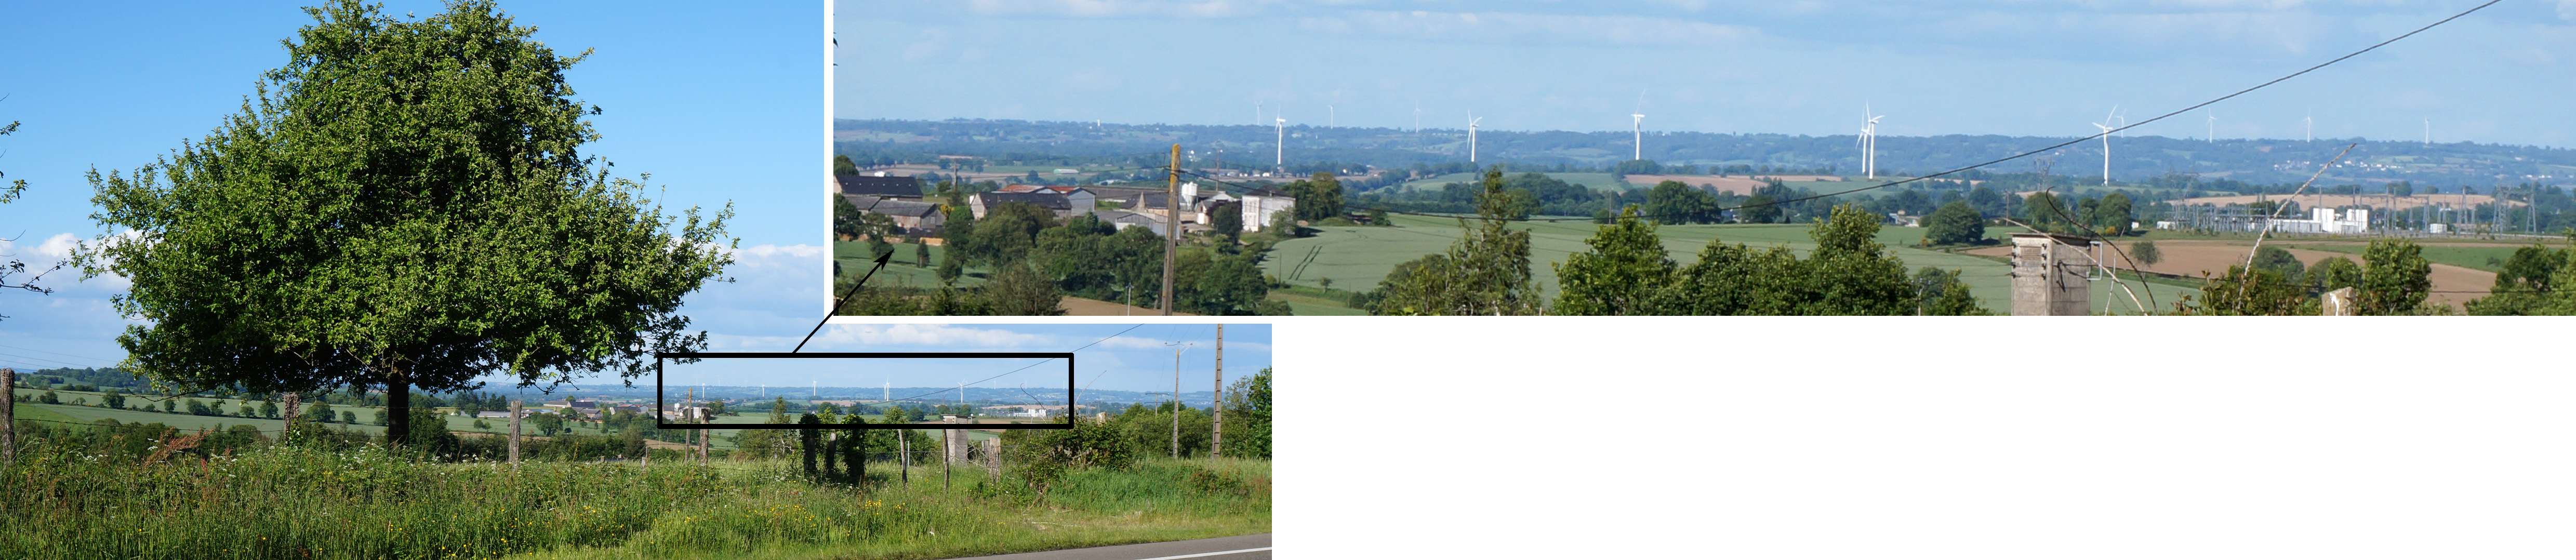 En appui sur la forêt de Mayenne, ouverture au nord-est et vue panoramique plongeante sur le plateau bocager semiouvert dominant la Varenne, les éoliennes d'Oisseau constituent des points de repère dans le paysage (Châtillon-sur-Colmont) en grand format (nouvelle fenêtre)